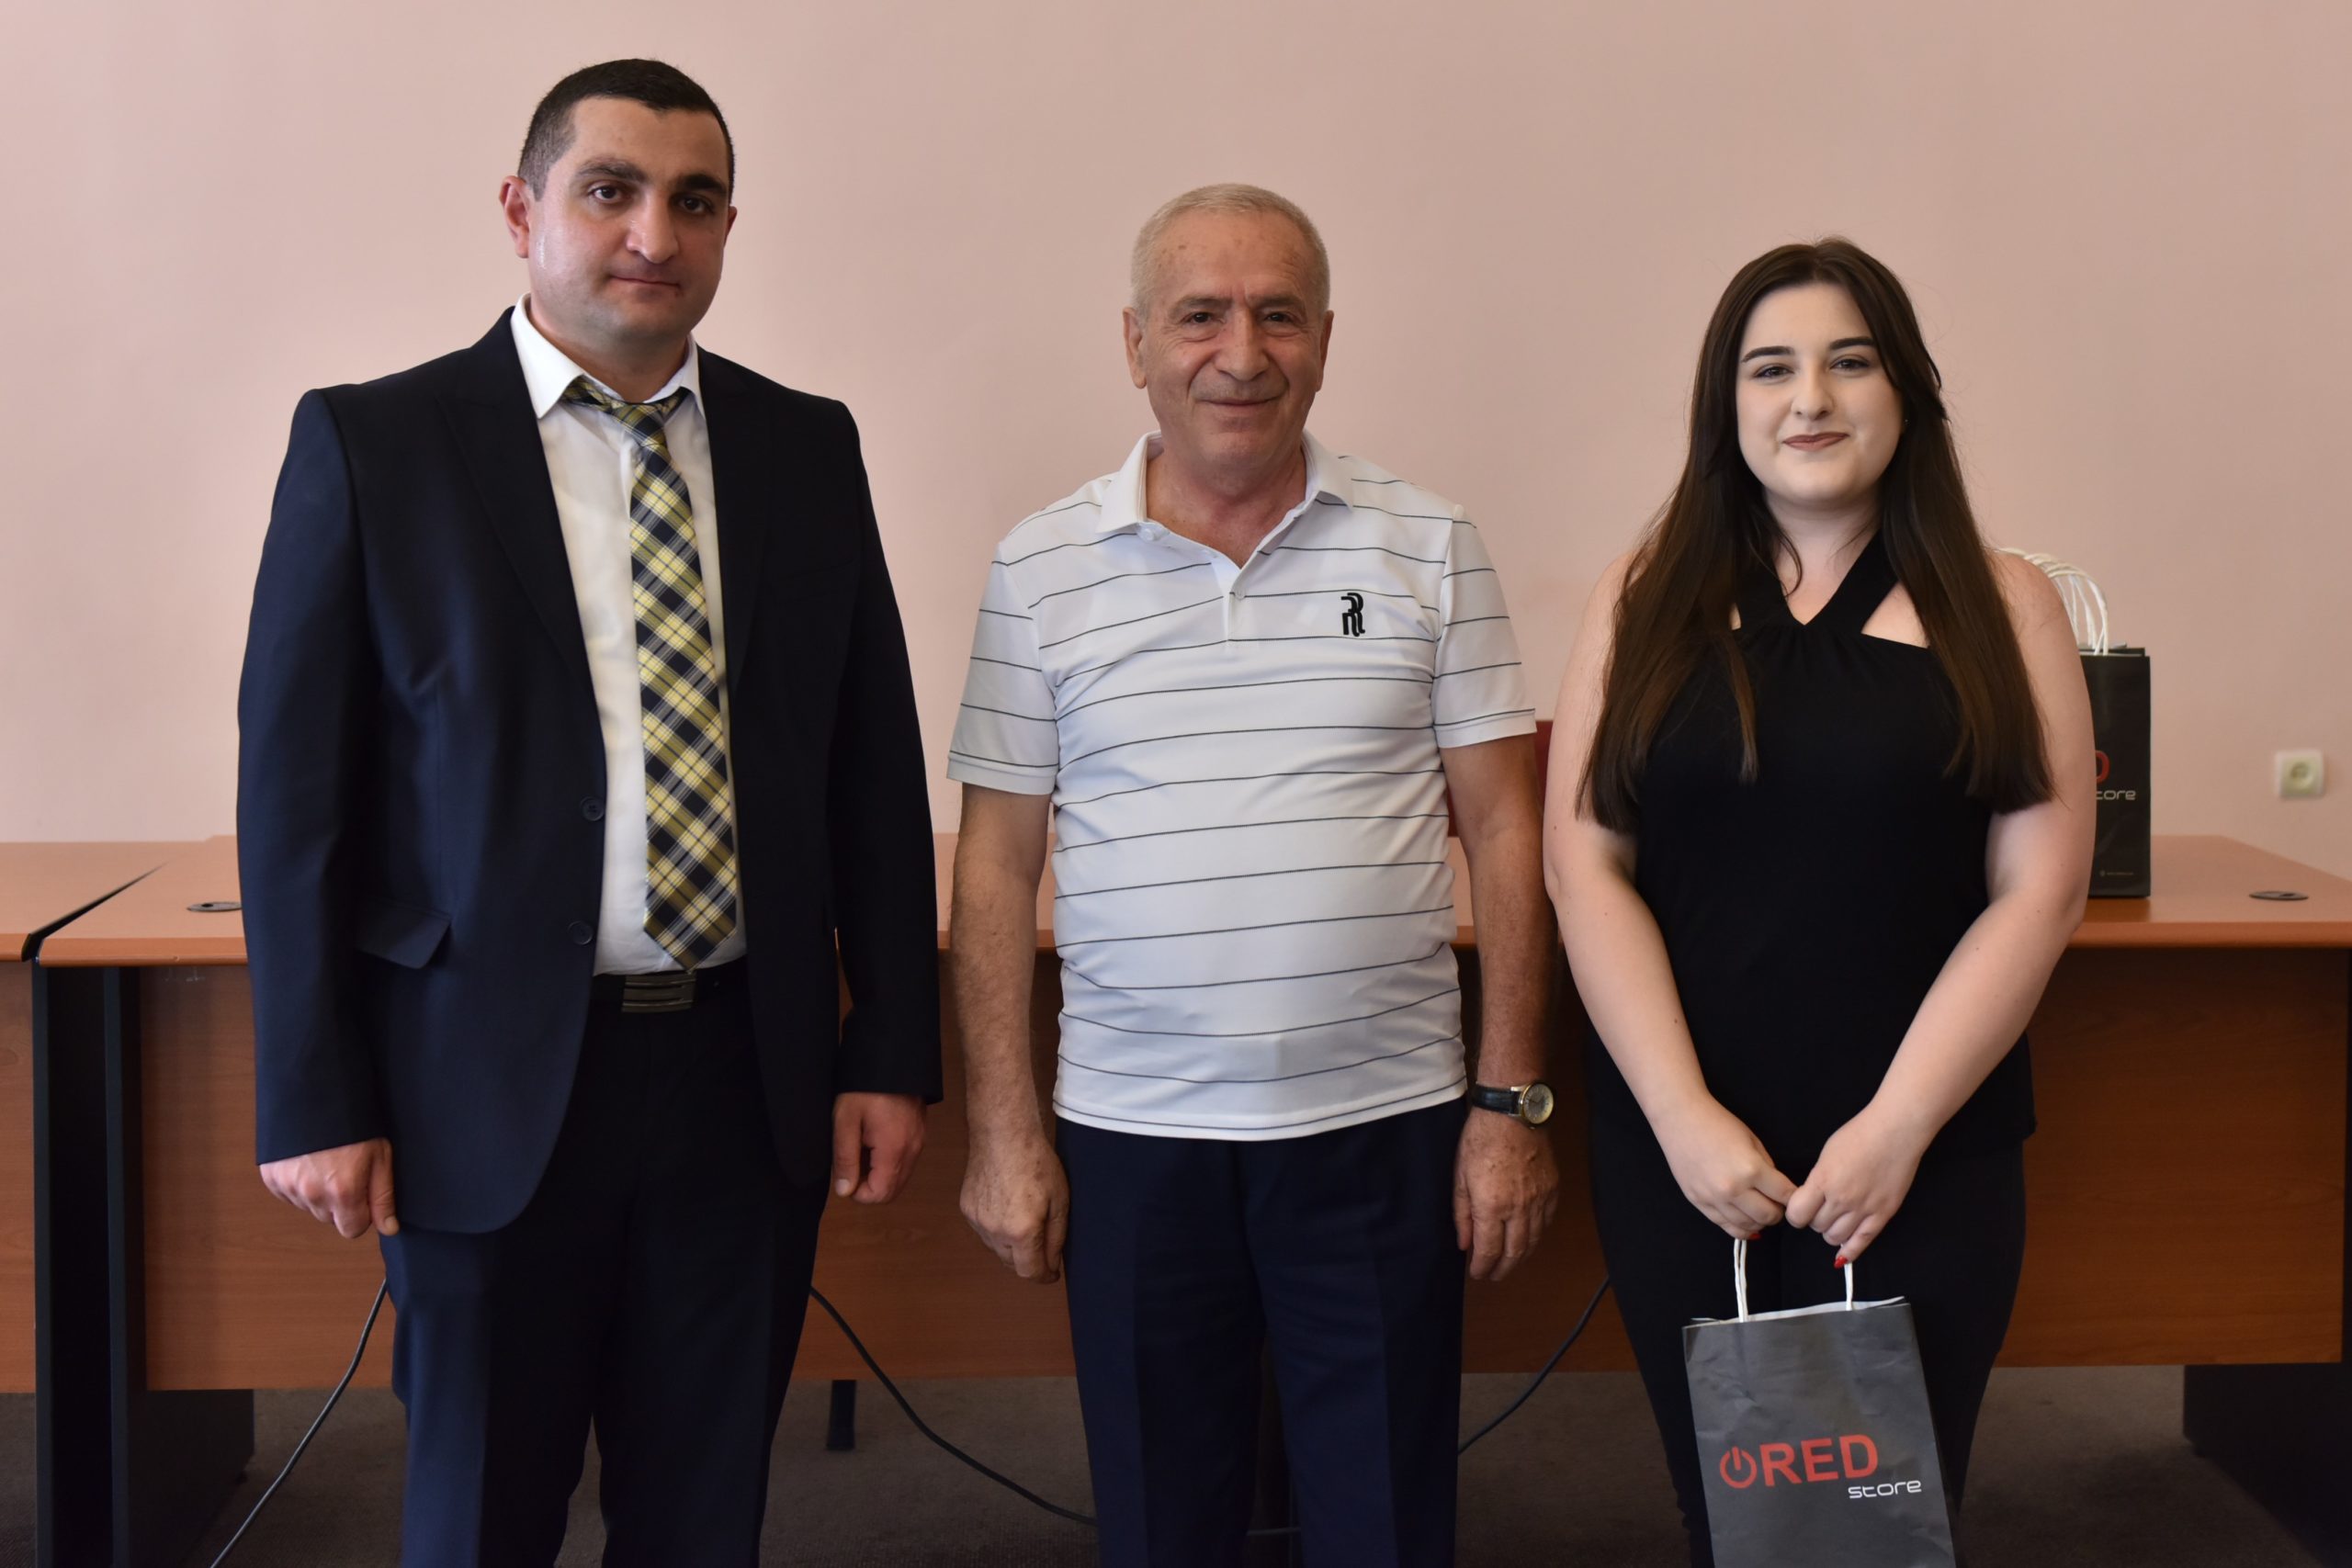 НИИРК – Конкурс научных работ среди студентов и аспирантов Армении: итоги